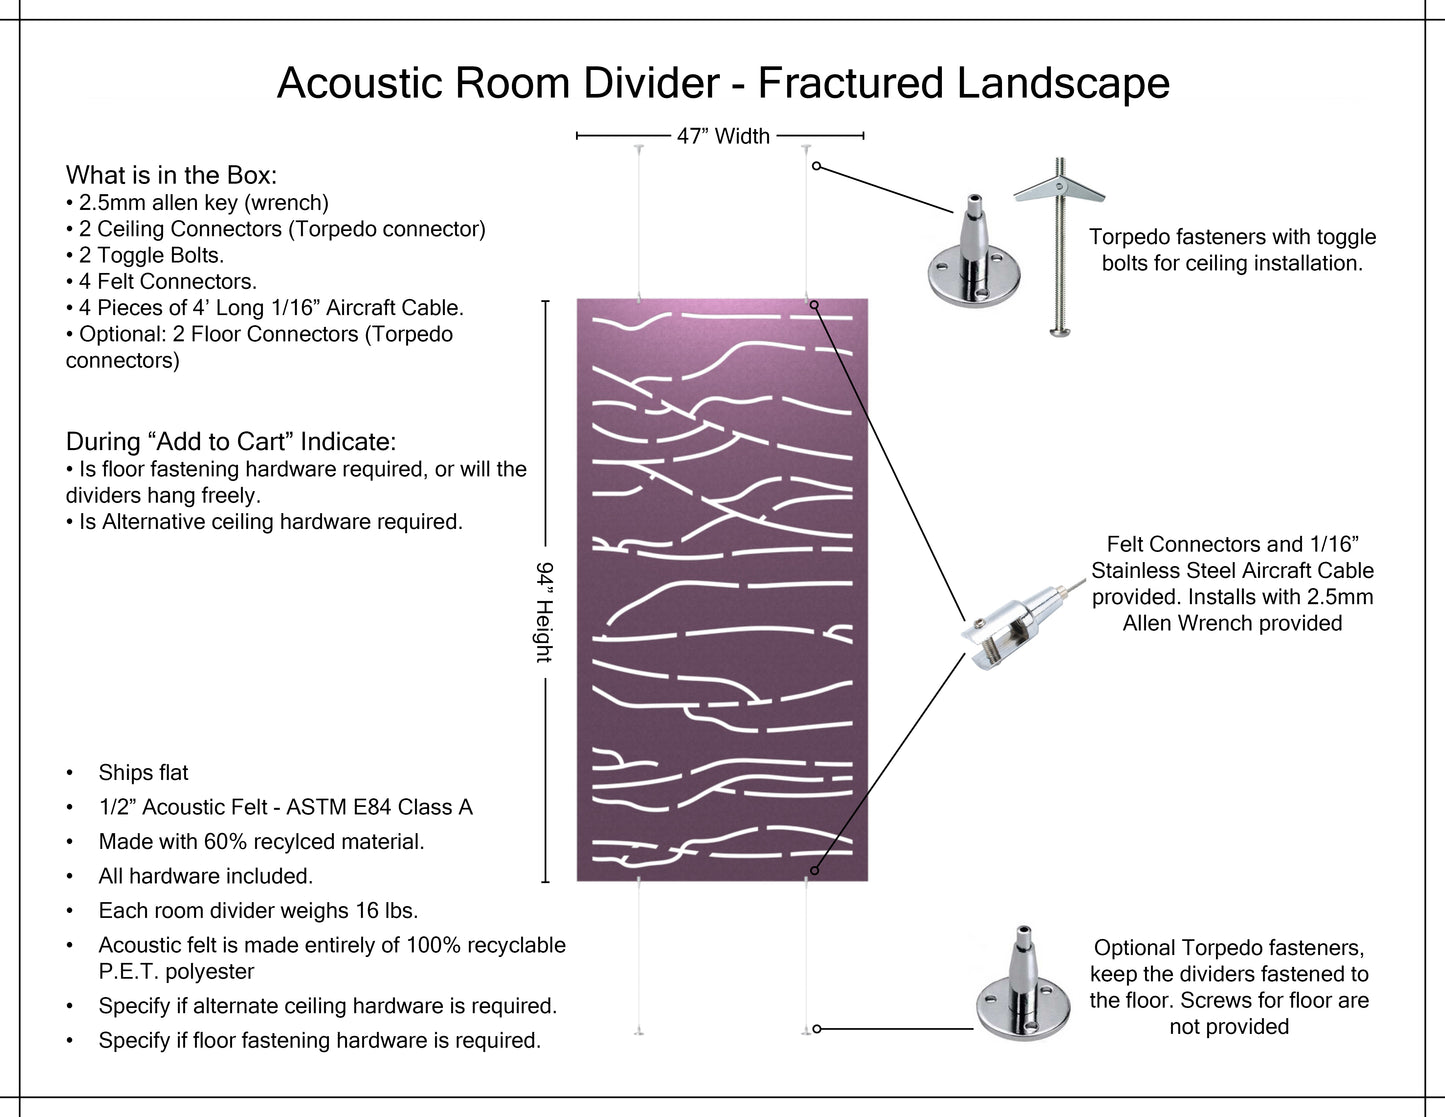 4x8 Acoustic Room Divider - Fractured Landscape